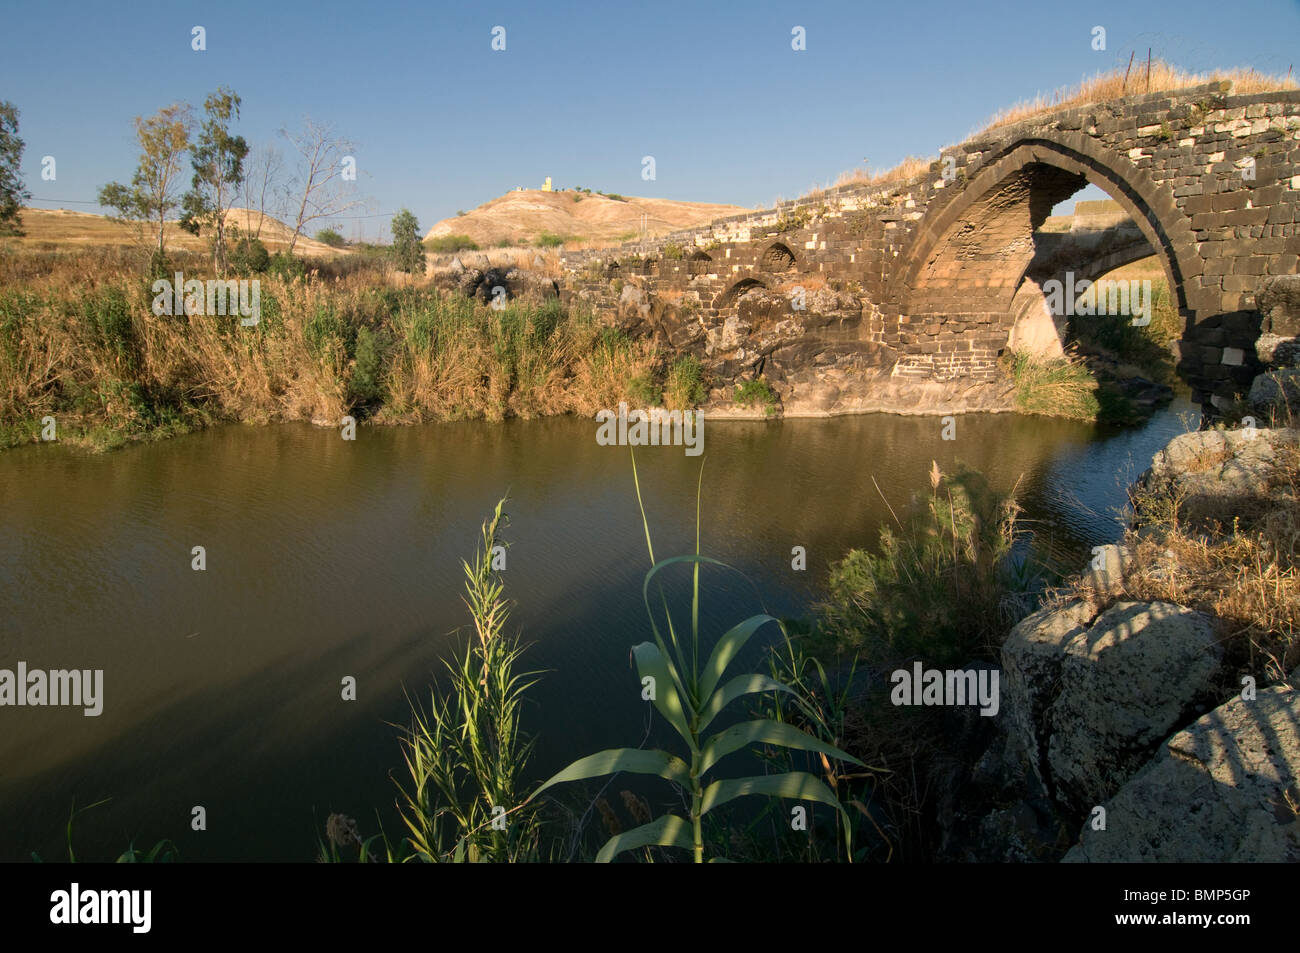 Jisr el-Majami o Jisr al-Mujamieh antico ponte di pietra, forse di origine romana, sul fiume Giordano al confine tra Israele e Giordania Foto Stock